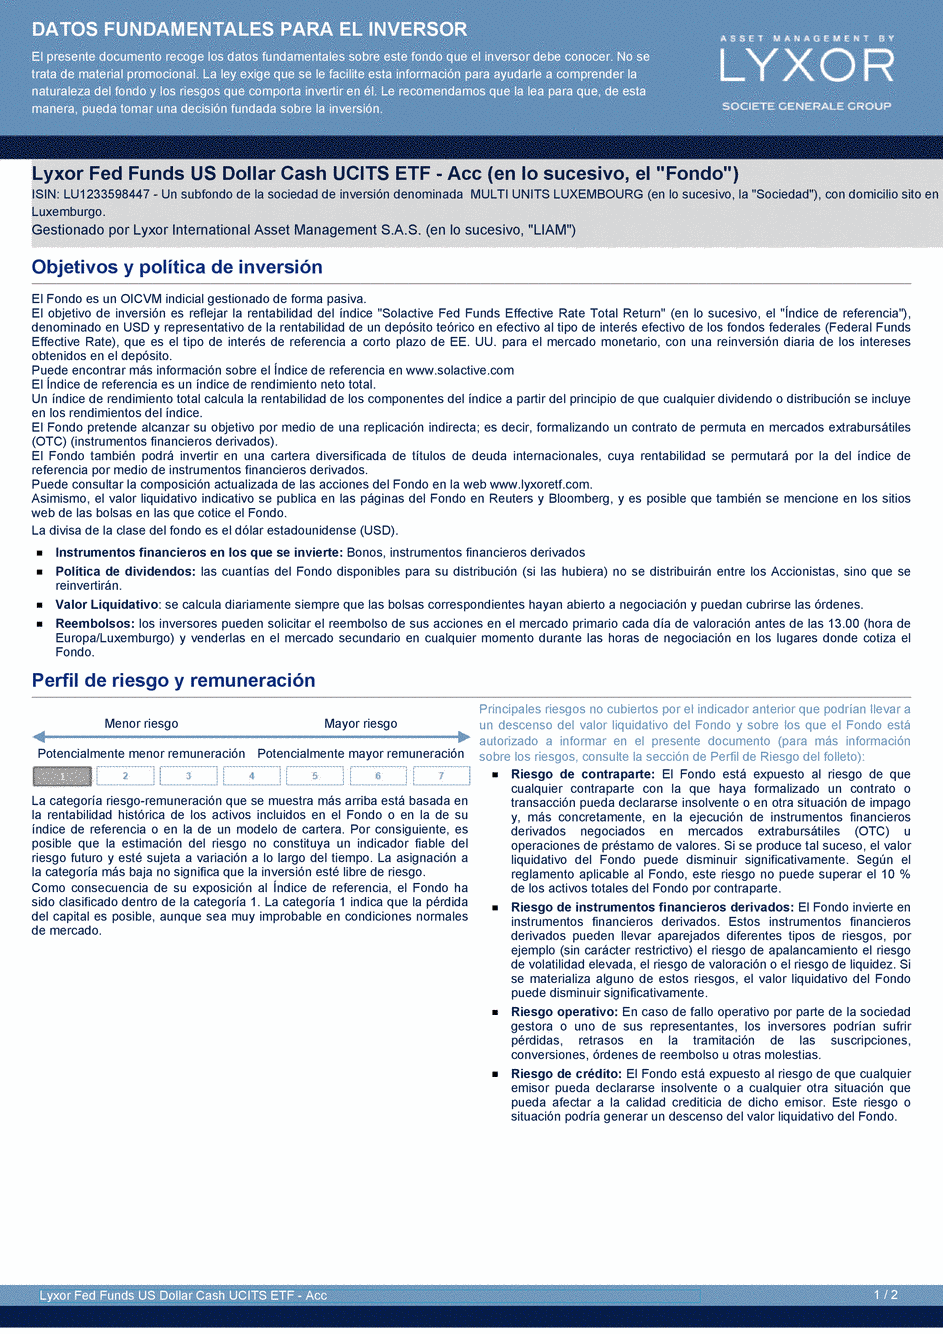 DICI Lyxor Fed Funds US Dollar Cash UCITS ETF - Acc - 19/02/2021 - Espagnol